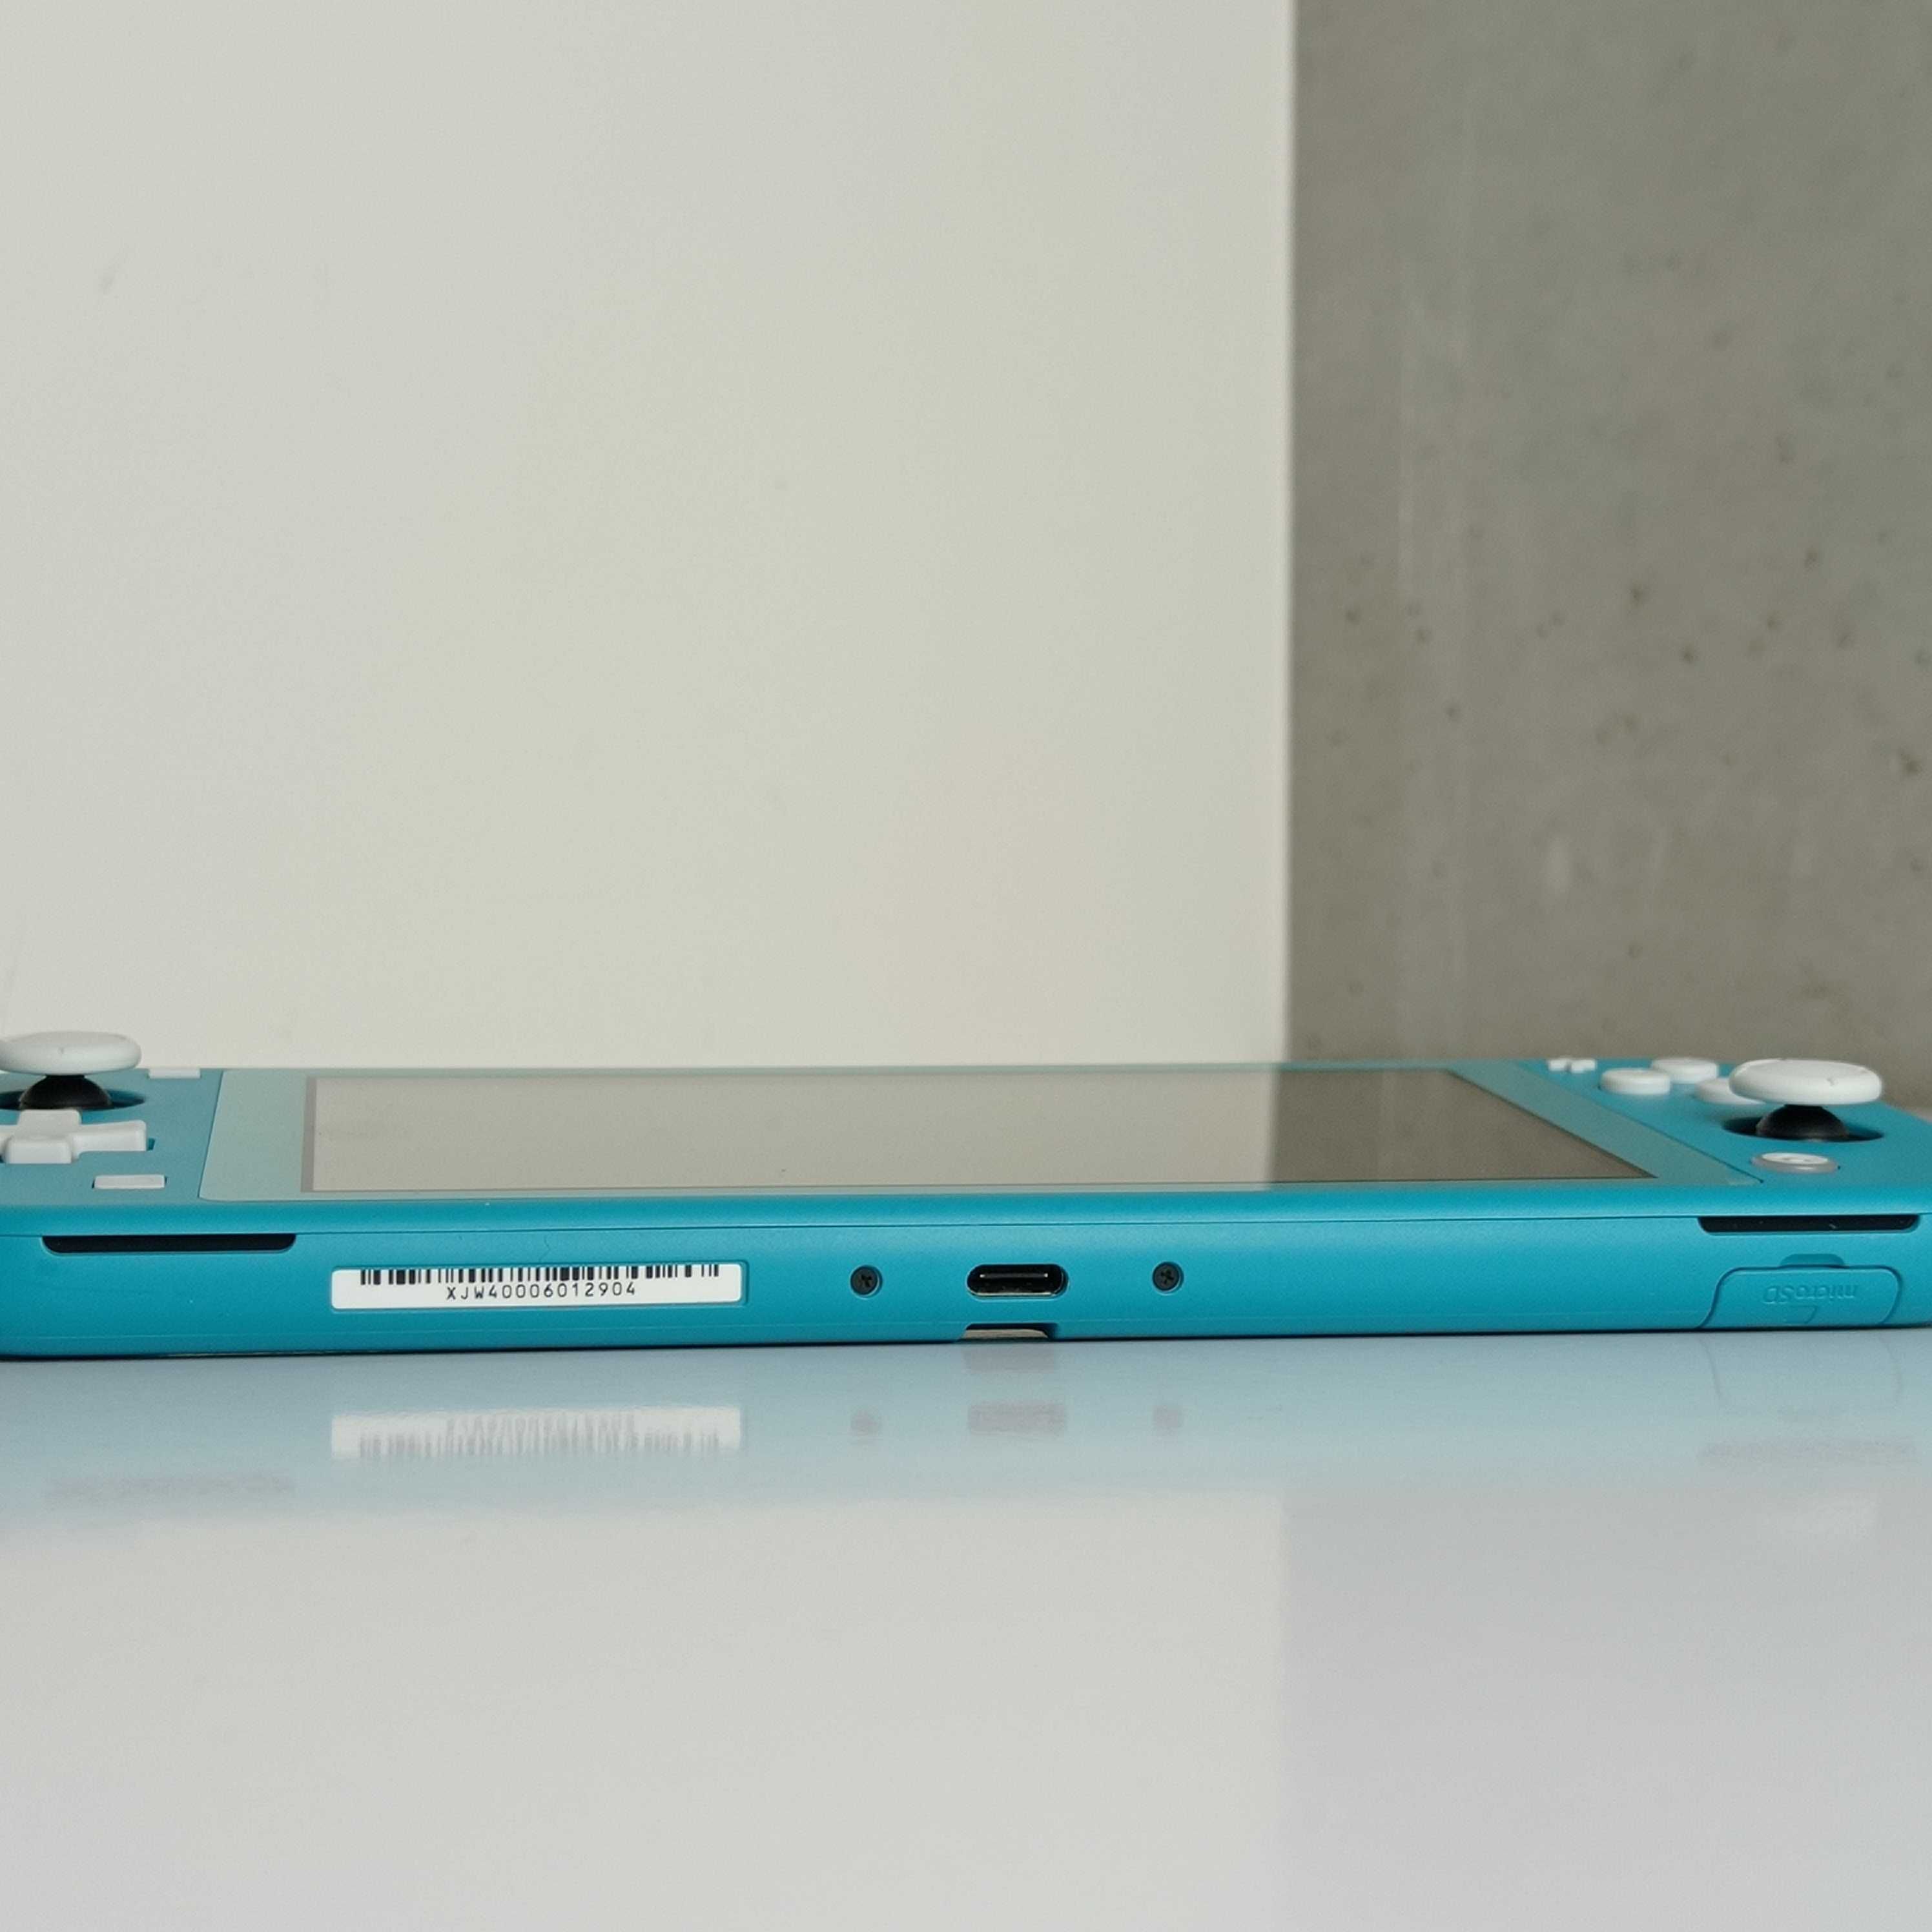 Консоль Nintendo Switch Lite 32GB Turquoise Б/У Нінтендо Свіч Лайт